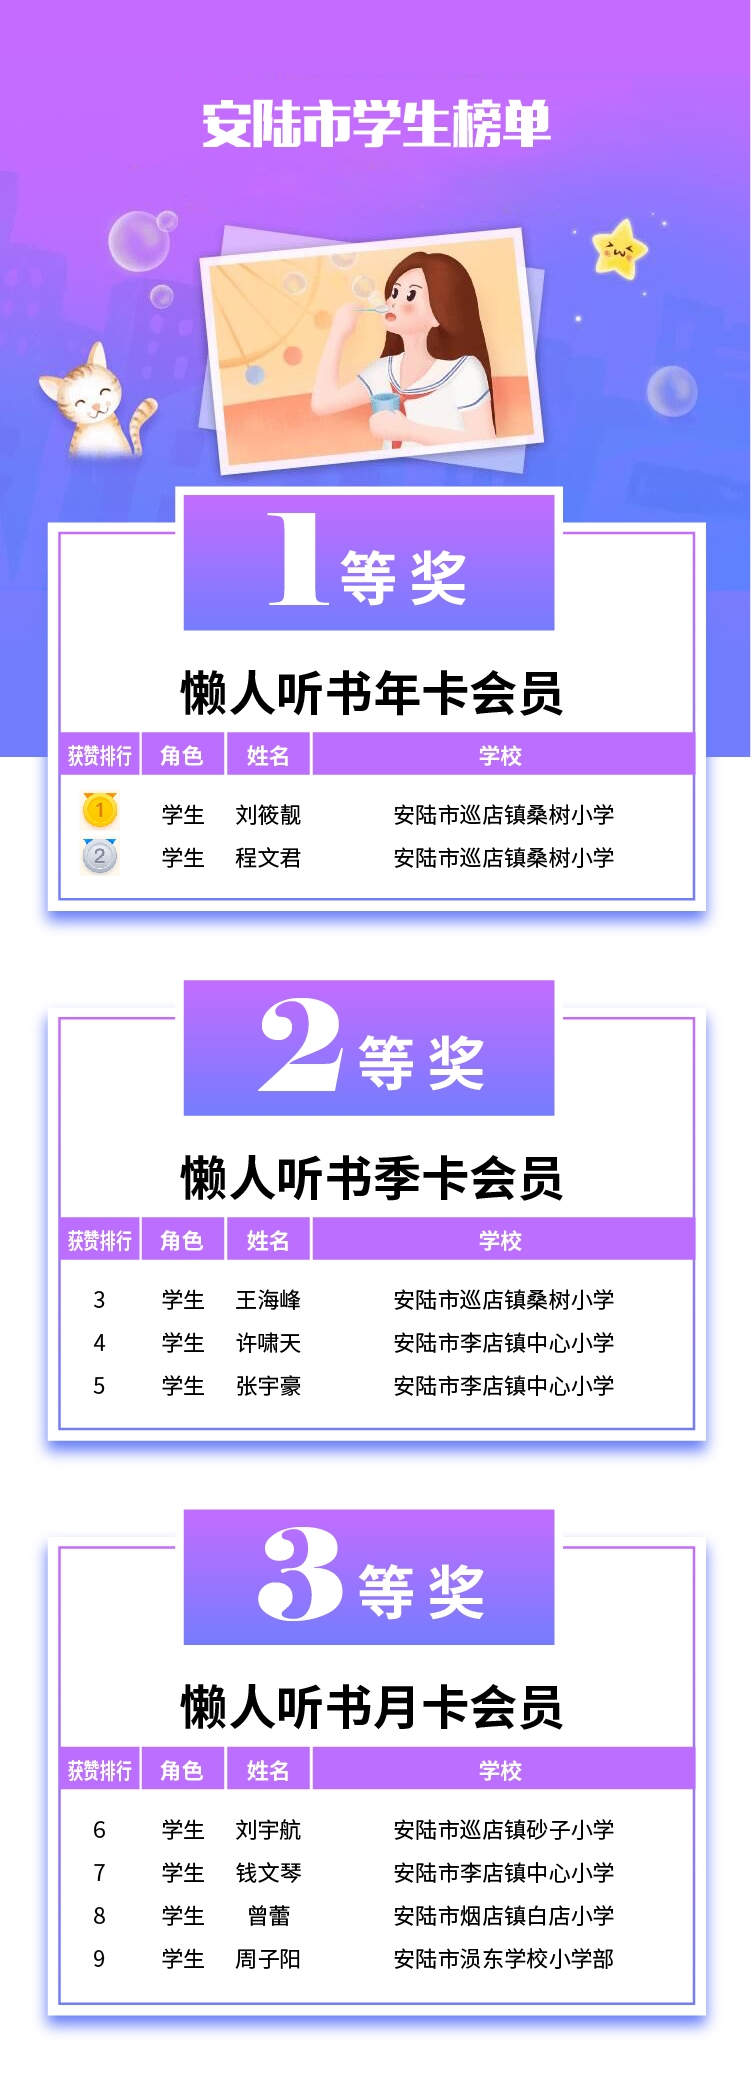 六一活动获奖名单-07安陆市学生.jpg